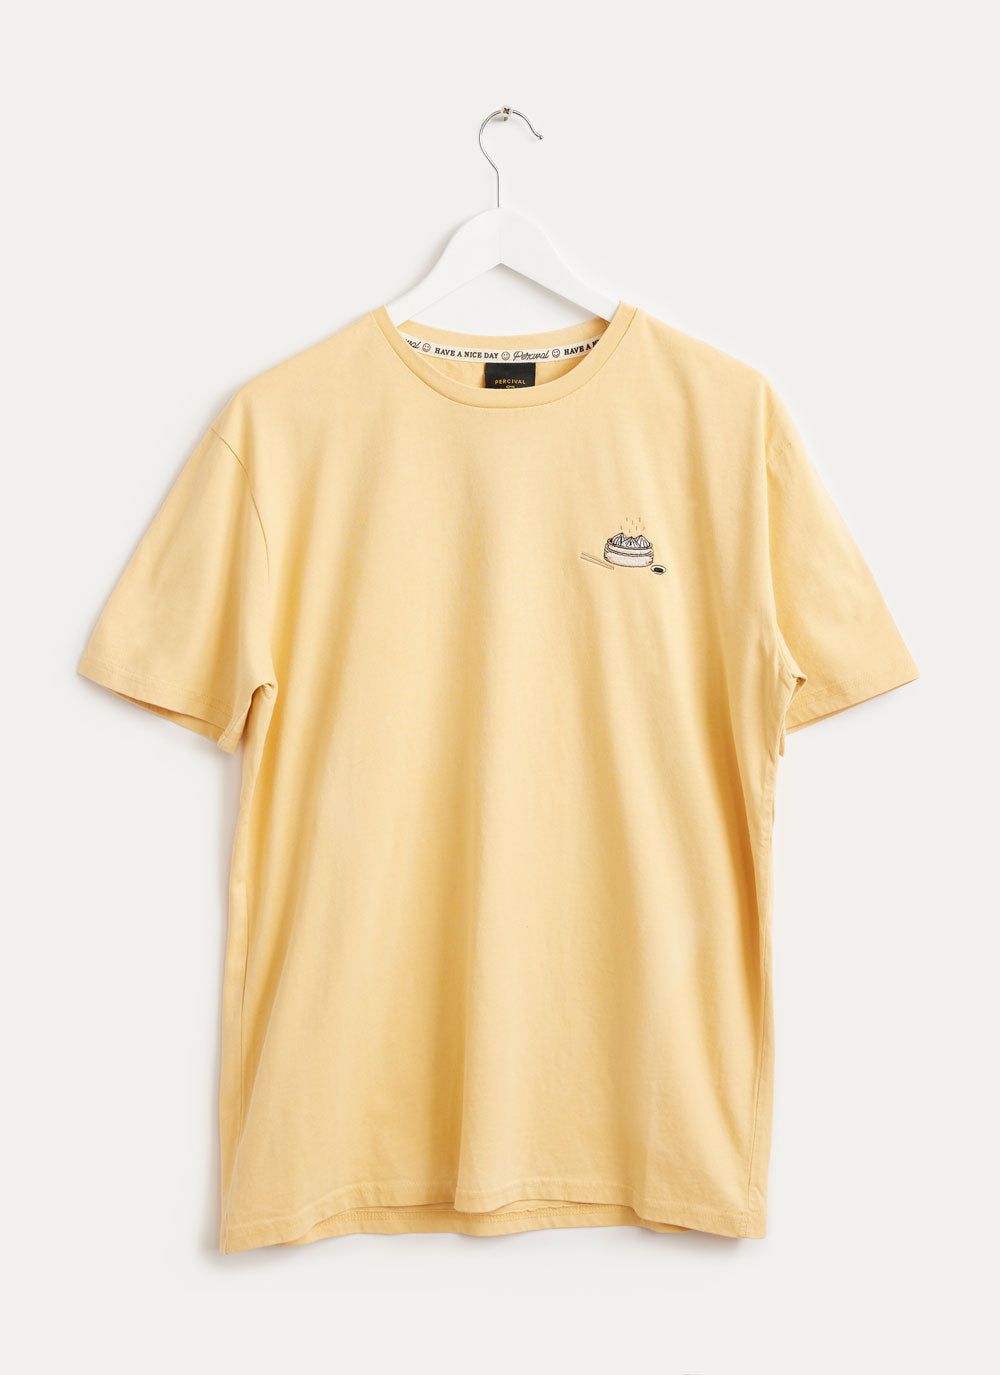 T Shirt | Dumplings | Yellow & Percival Menswear